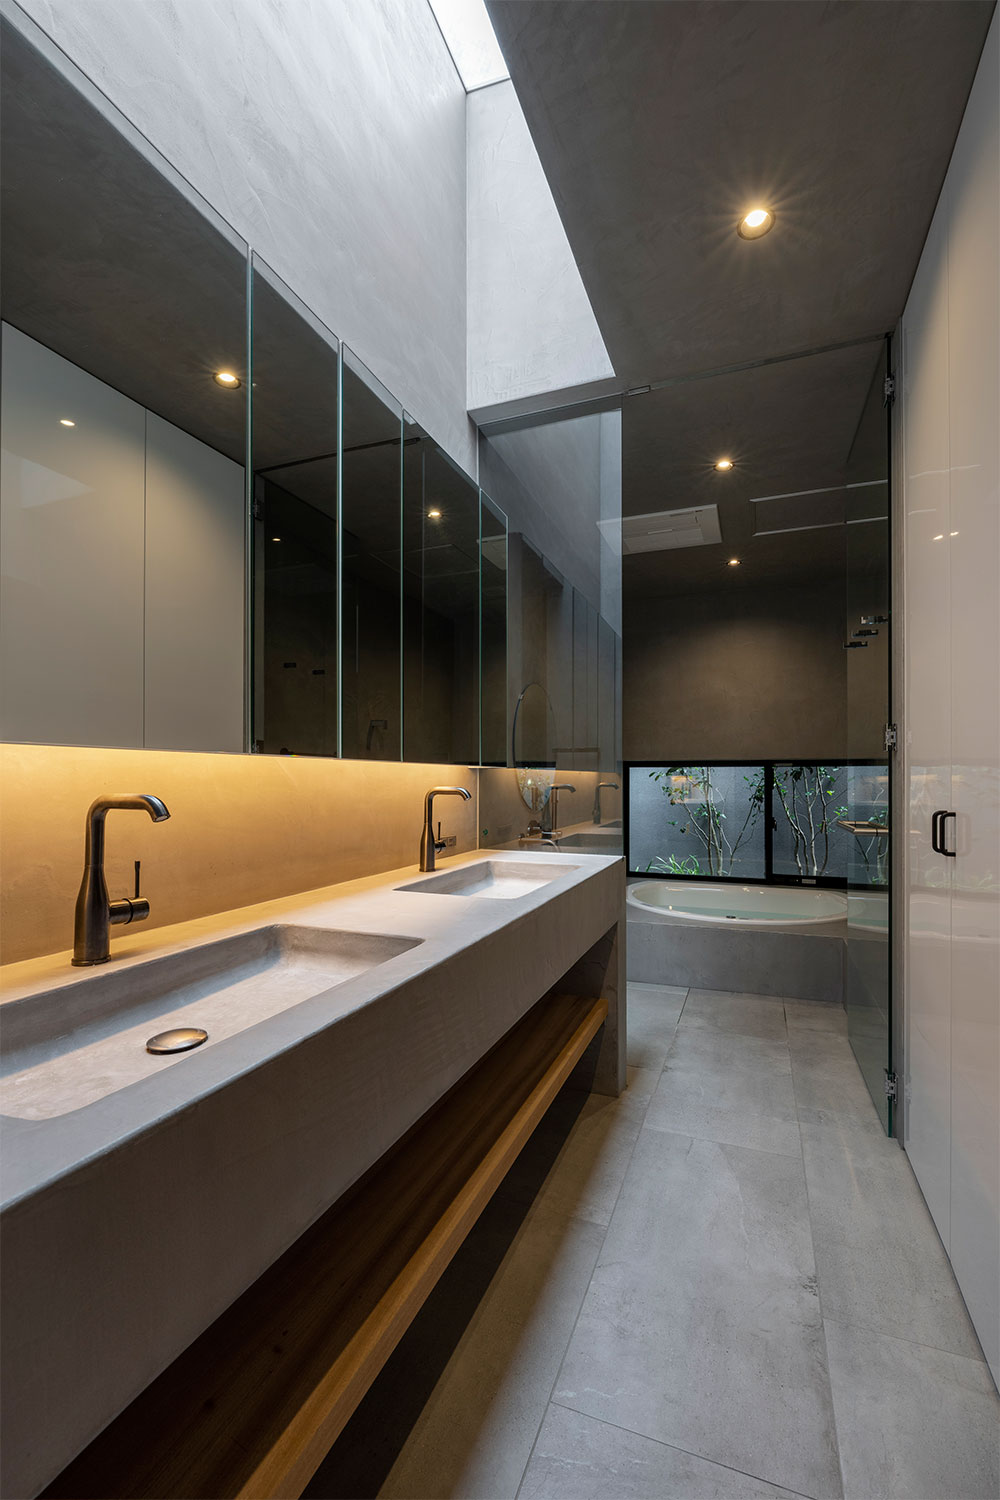 関西の建築家・真銅祥一朗設計によるモールテックスを使用した洗面所。 トップライトから取り入れた自然光が明るく照らす。